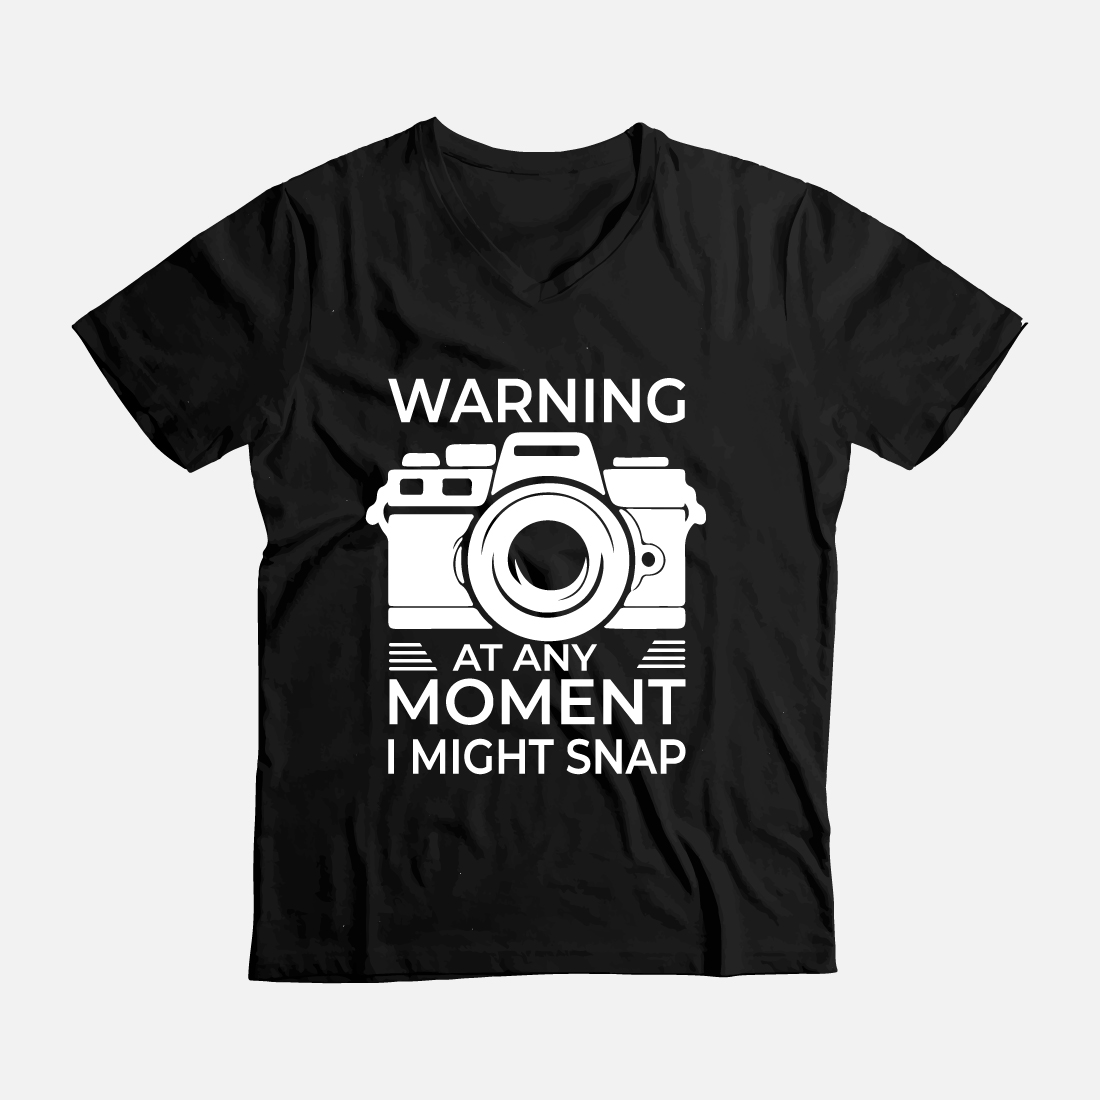 warning at any moment i might snap funny t shirt 359